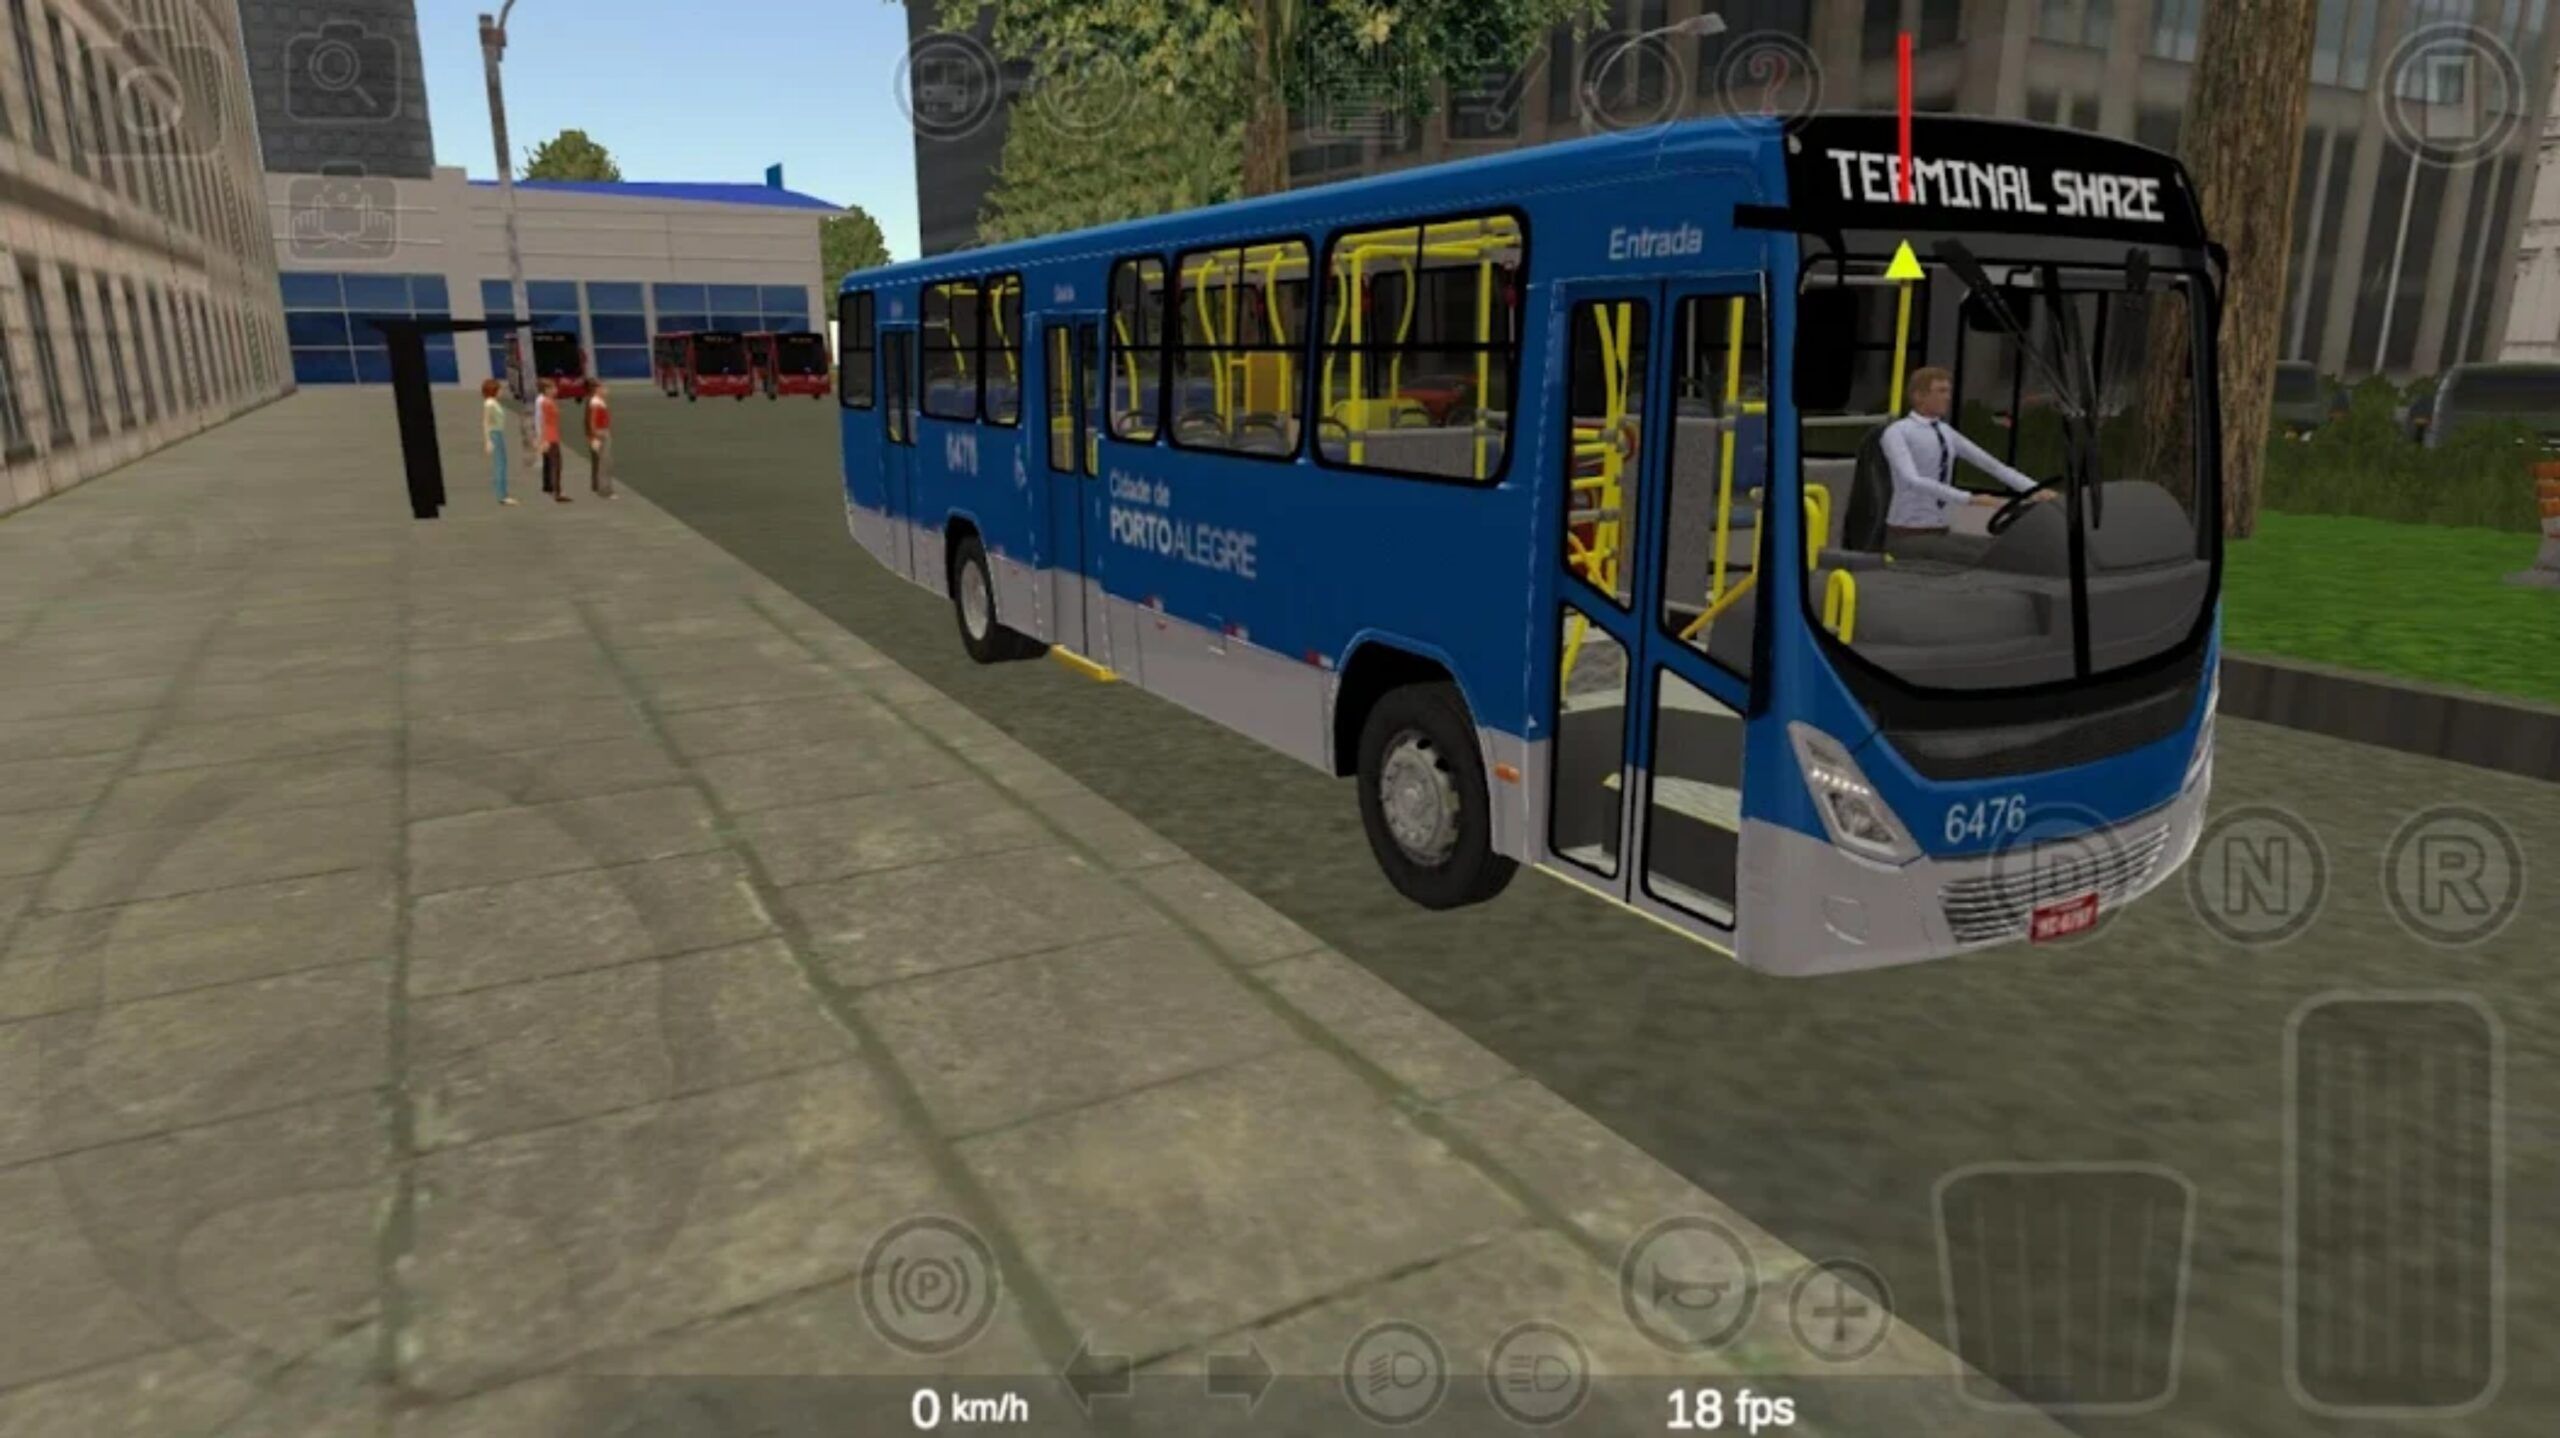 Atualização Proton Bus Simulator LITE (Android) v192: Veja o que